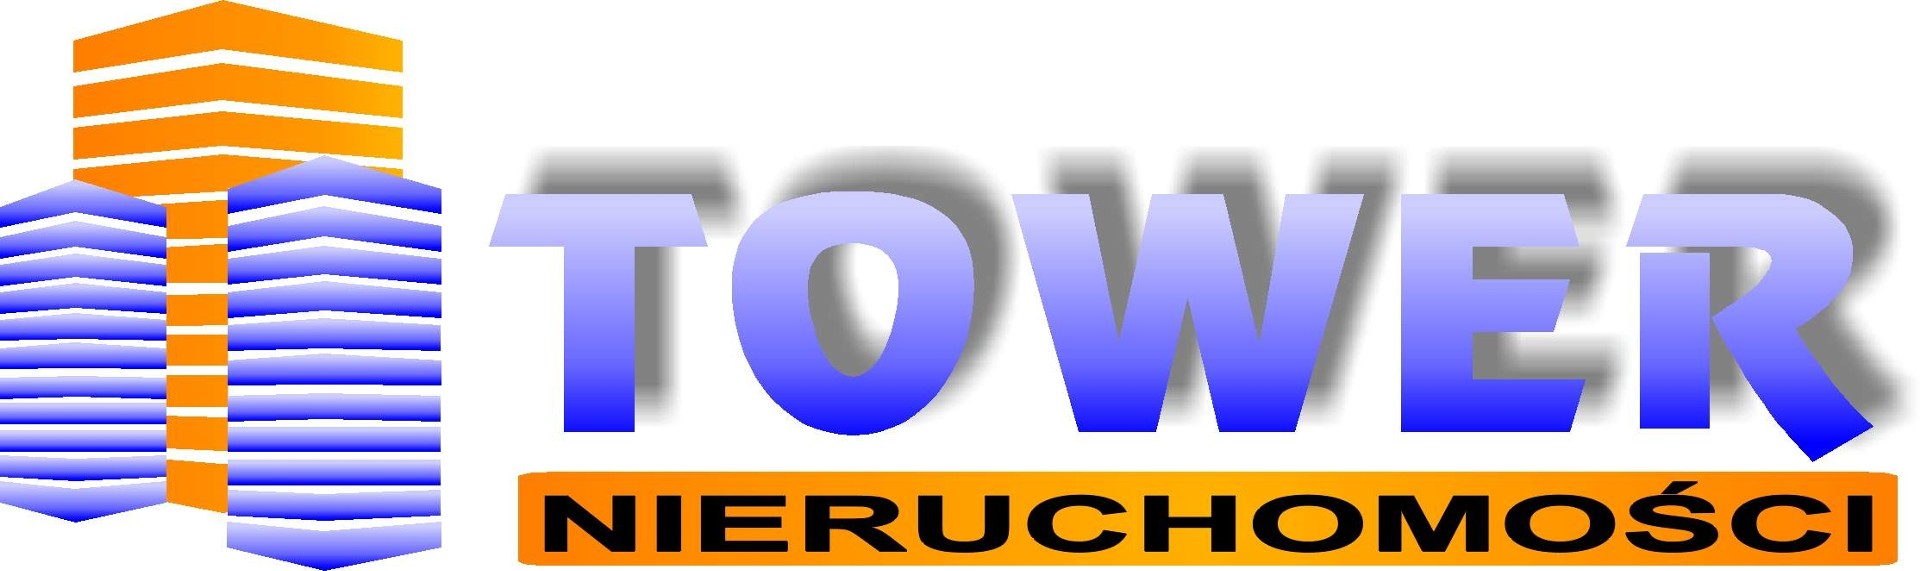 Logo Tower